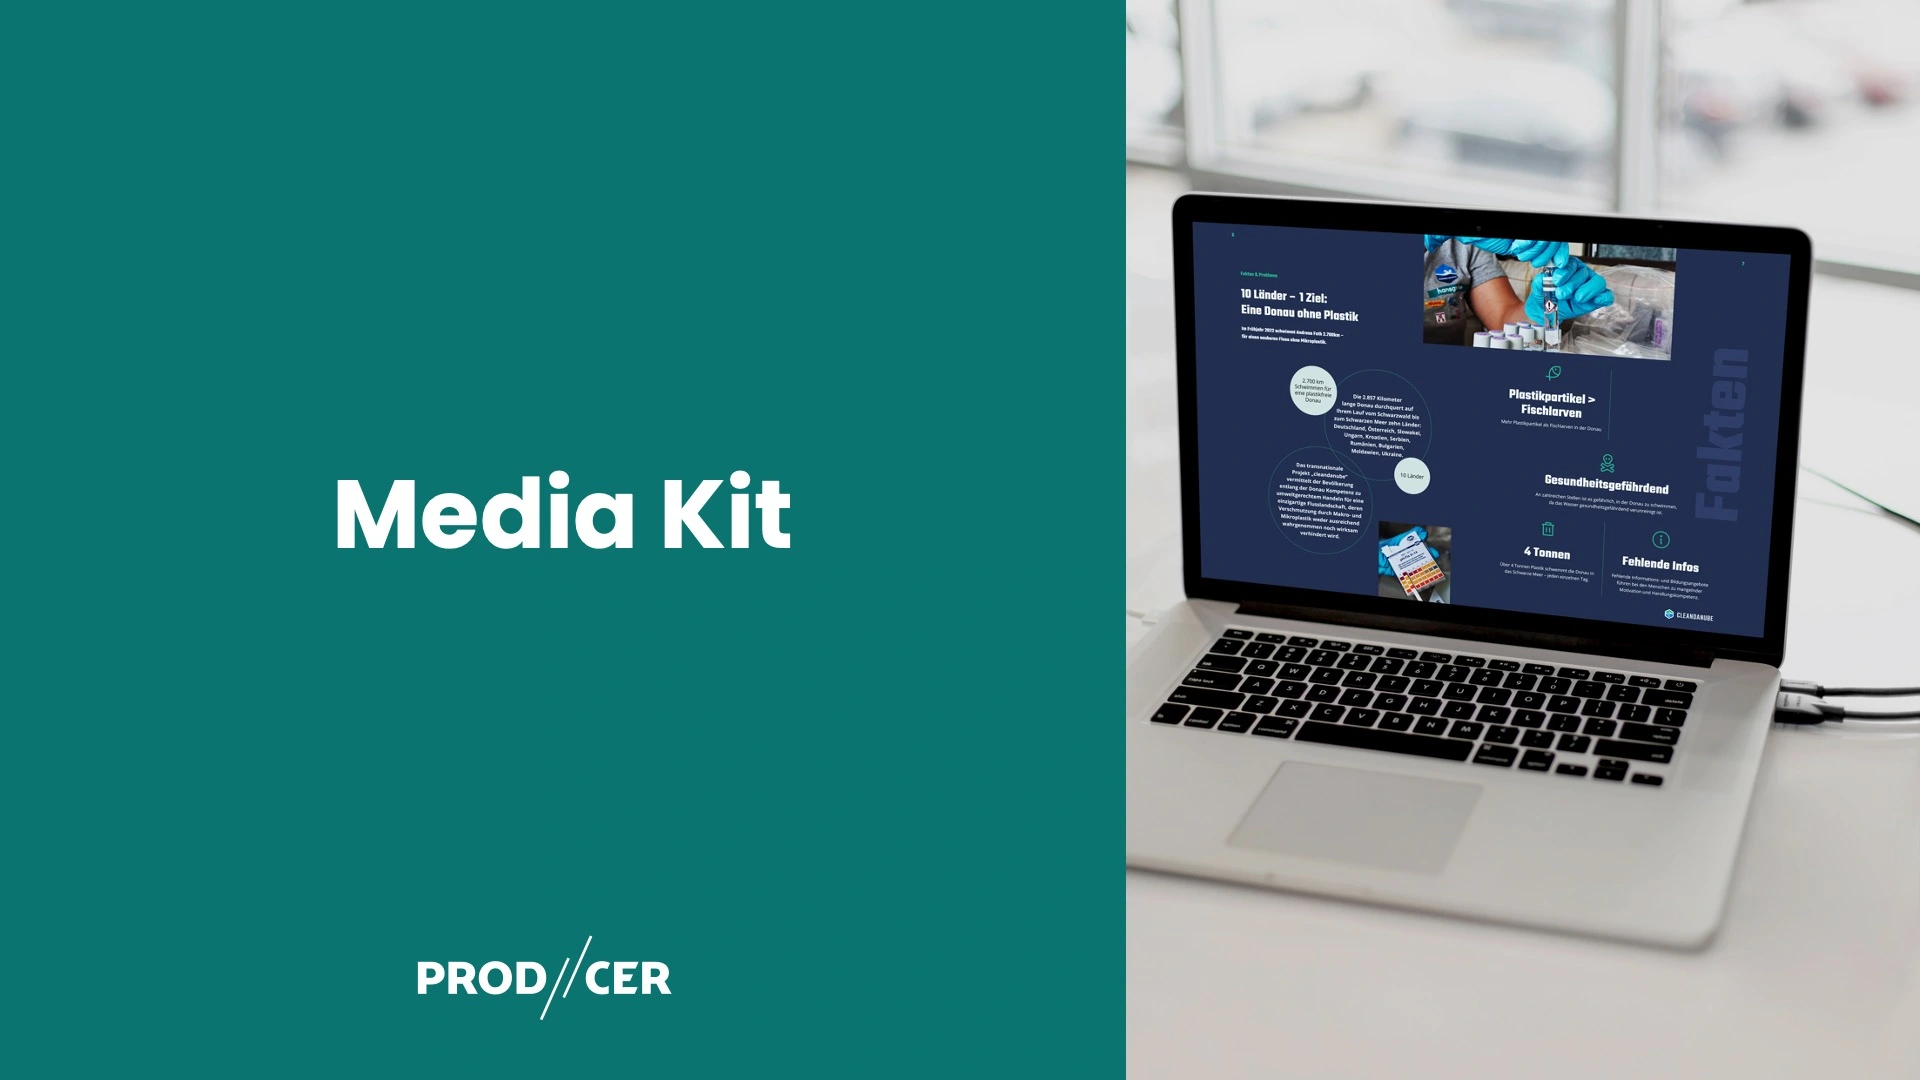 Media Kit von PR-Spezialisten und professionellen Designern online beauftragenonline bestellen, zu sehen modernes Notebook, Einblick Mediakit auf dem Bildschirm